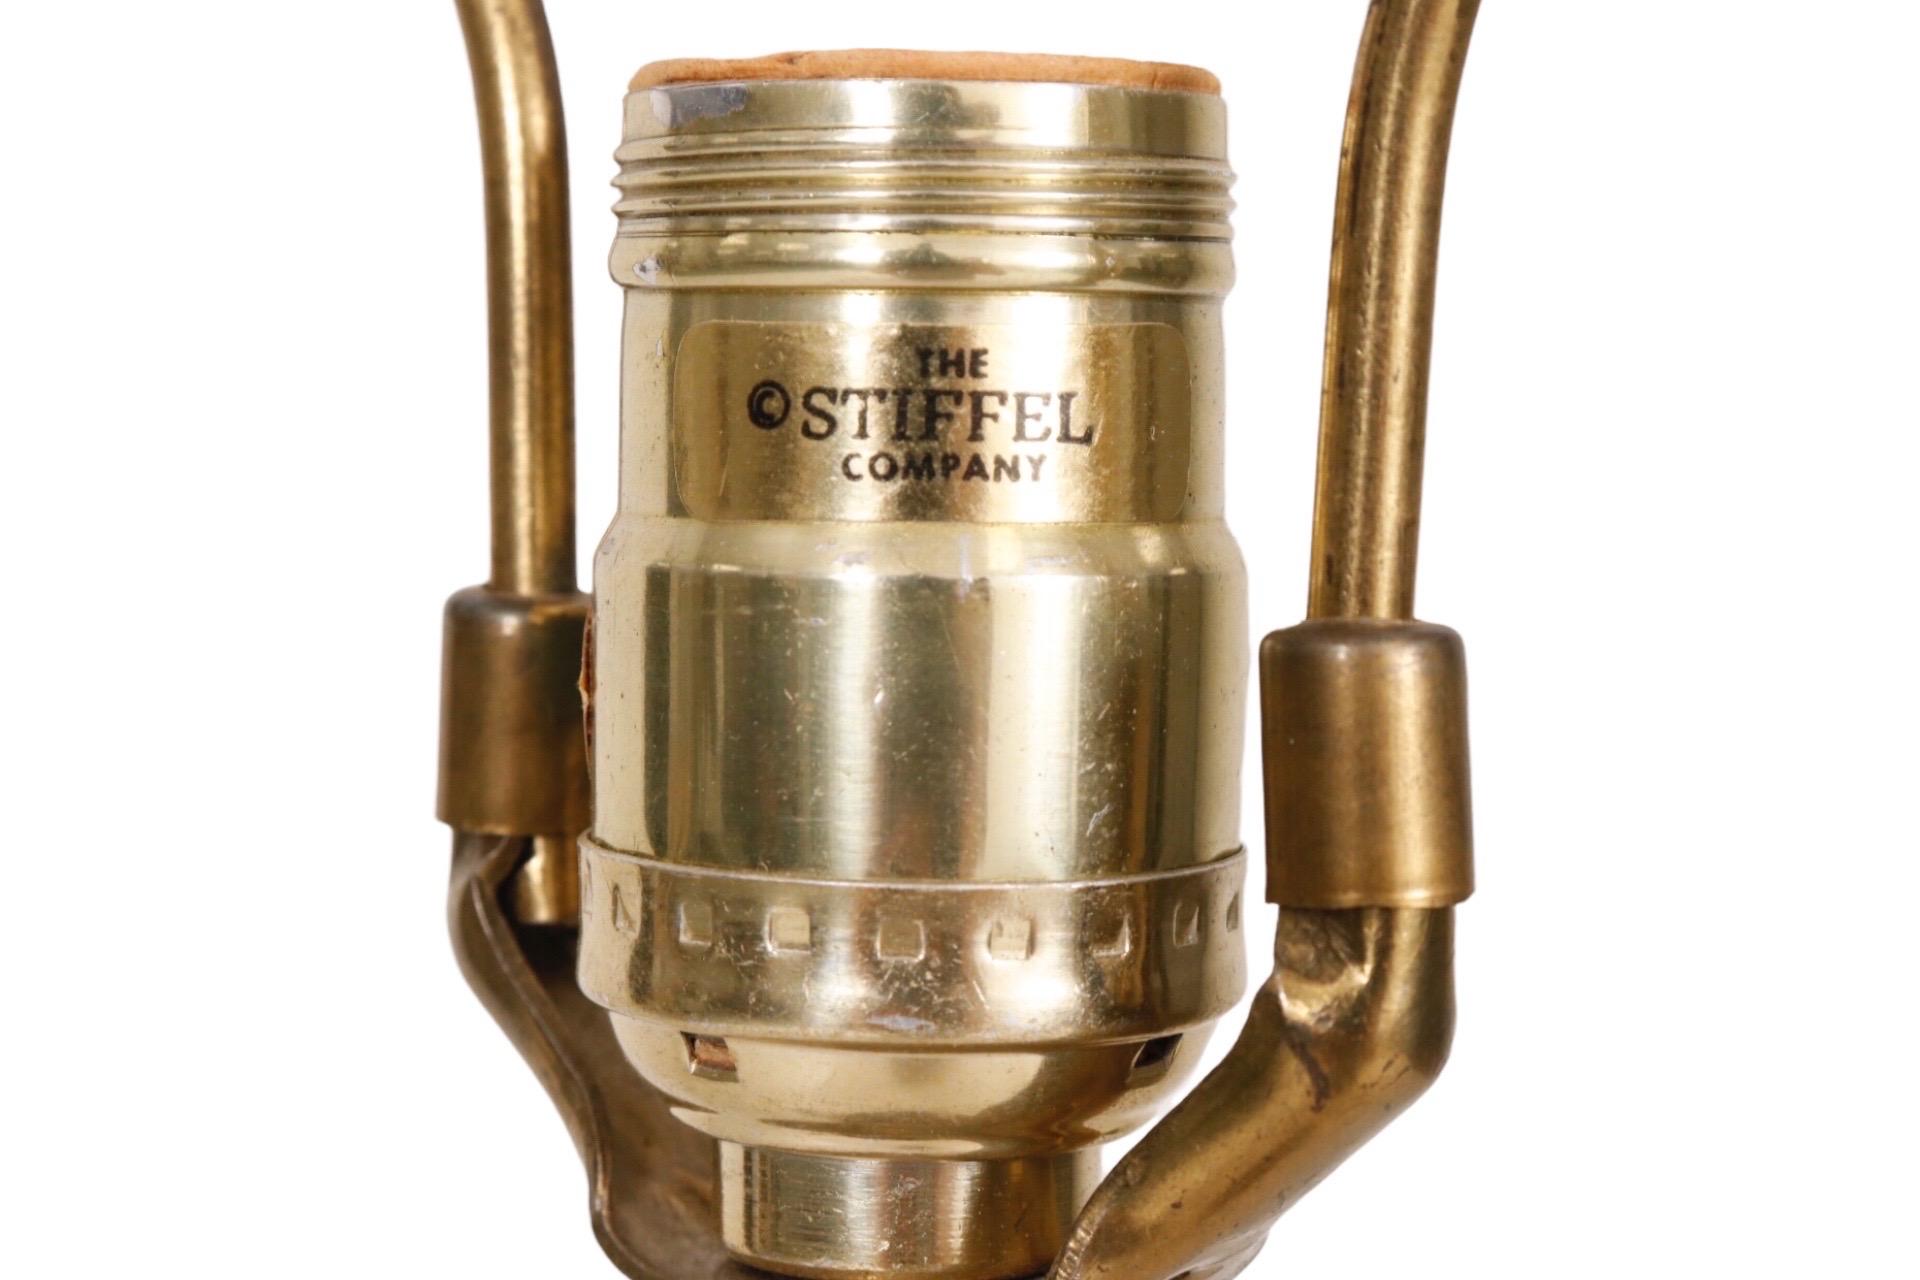 Une lampe de table Stiffel modèle #5561 en laiton. Moulée dans un style trophée avec des feuilles d'acanthe enroulées au-dessus d'une urne cannelée. Le petit bouton rotatif marche-arrêt se trouve sur la base qui est moulée pour donner l'impression